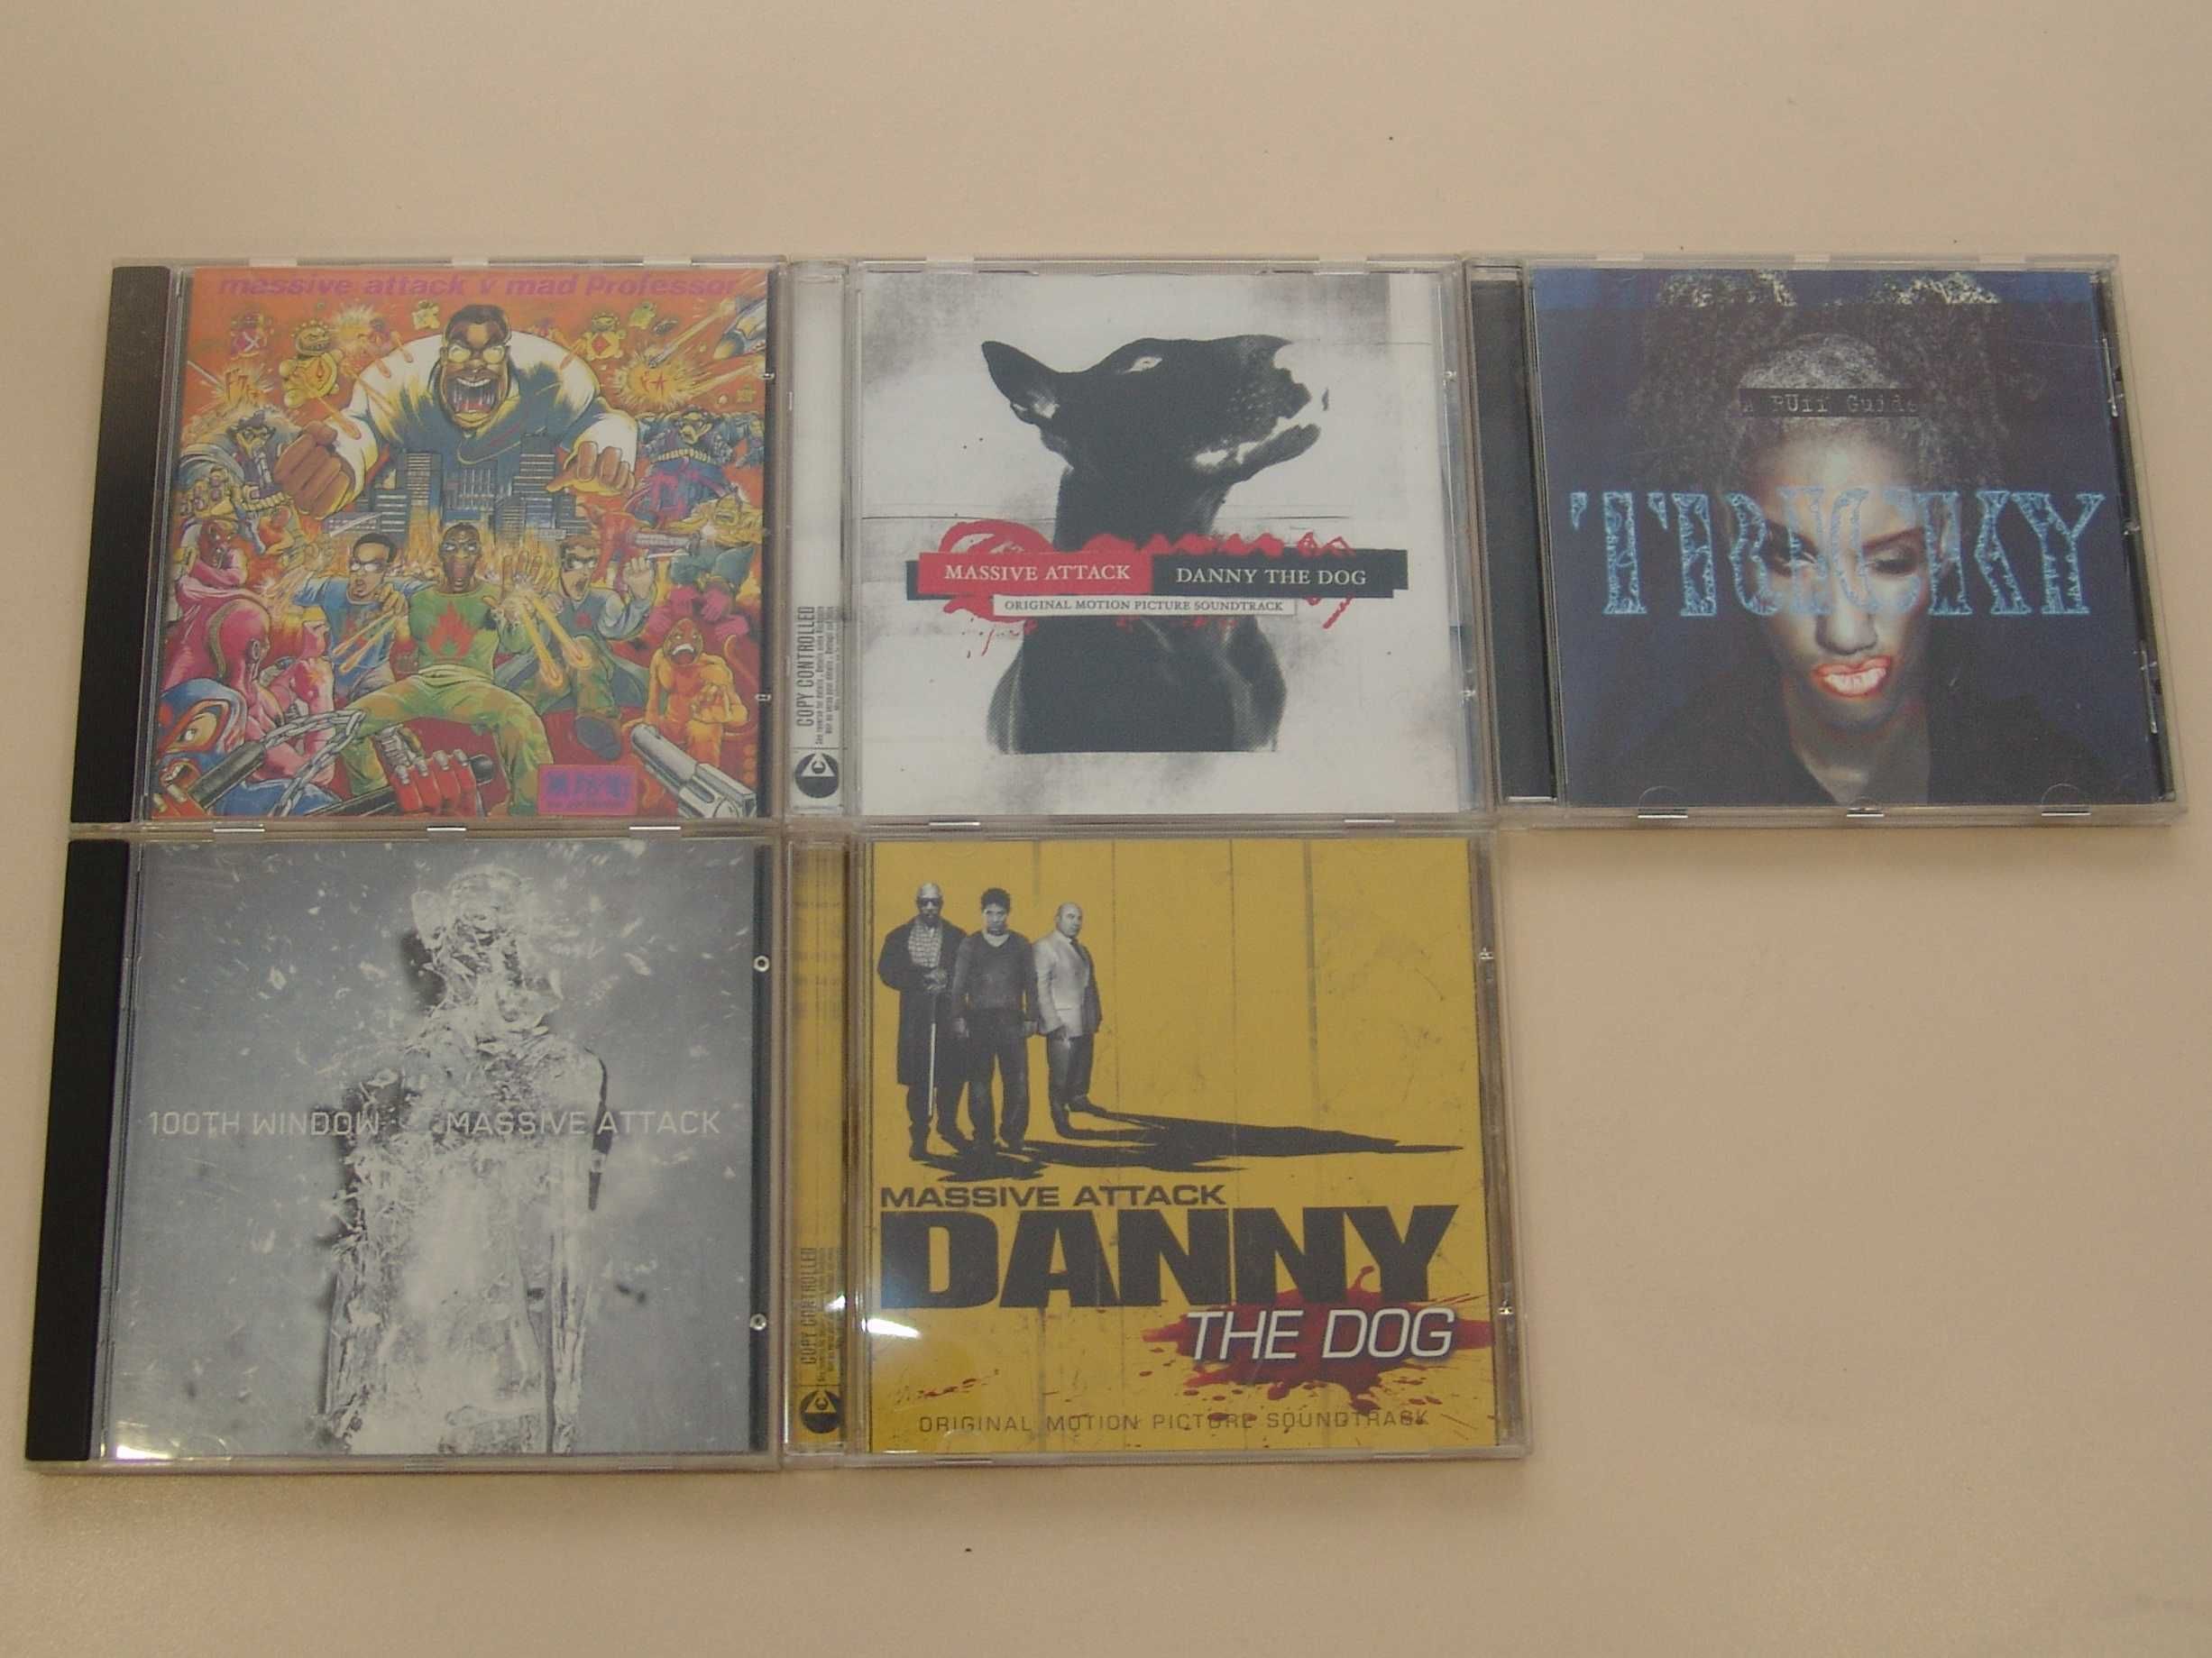 Фирменные CD компакт-диски Massive Attack, Tricky. Оригинал.